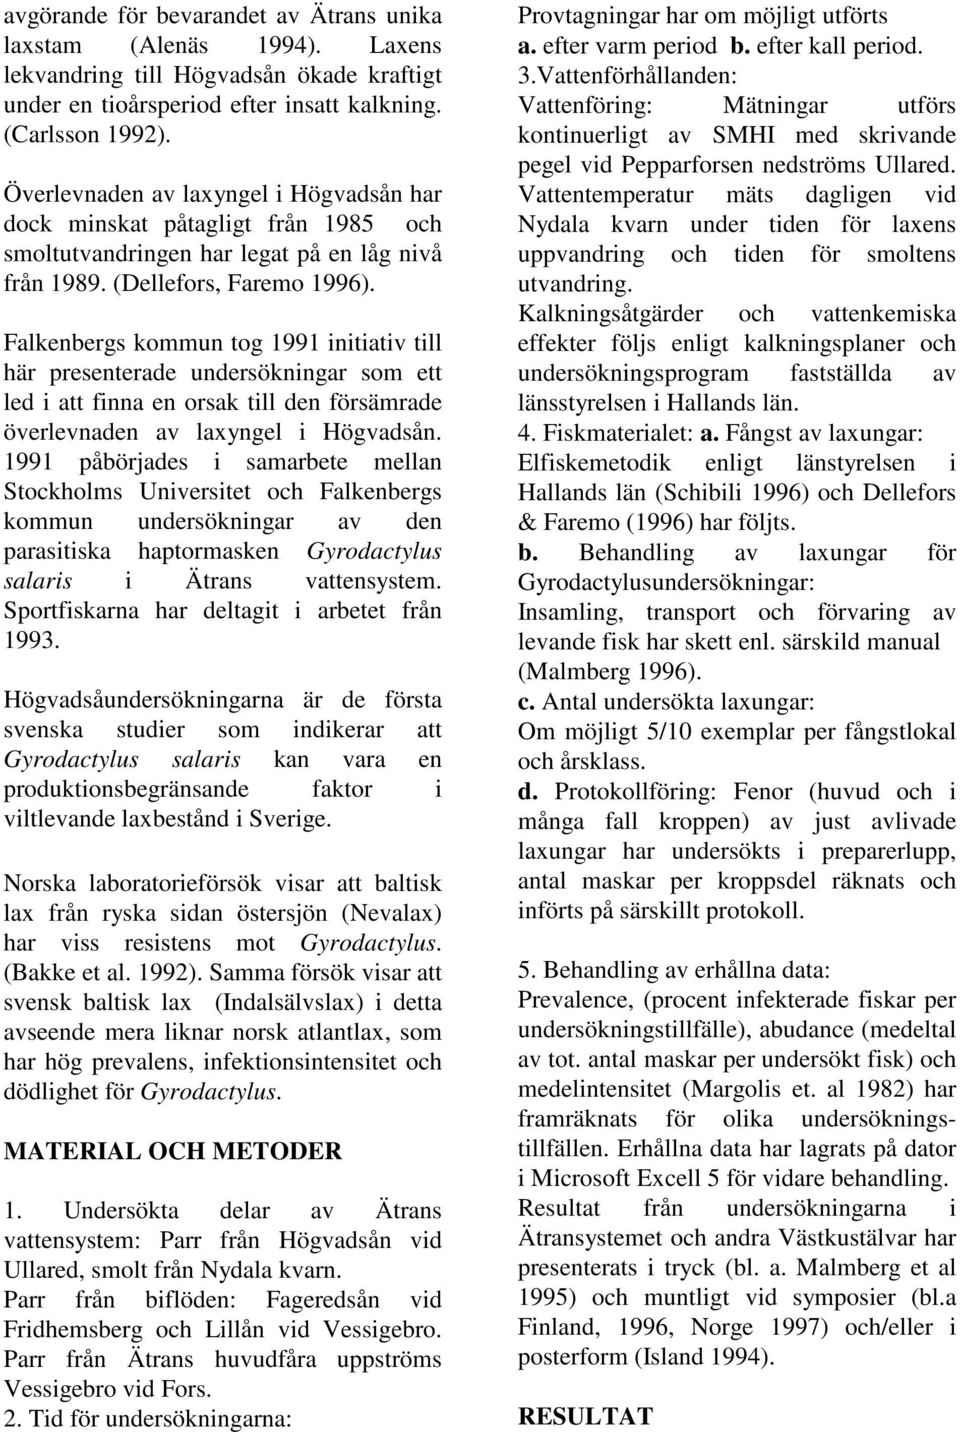 Falkenbergs kommun tog 1991 initiativ till här presenterade undersökningar som ett led i att finna en orsak till den försämrade överlevnaden av laxyngel i Högvadsån.